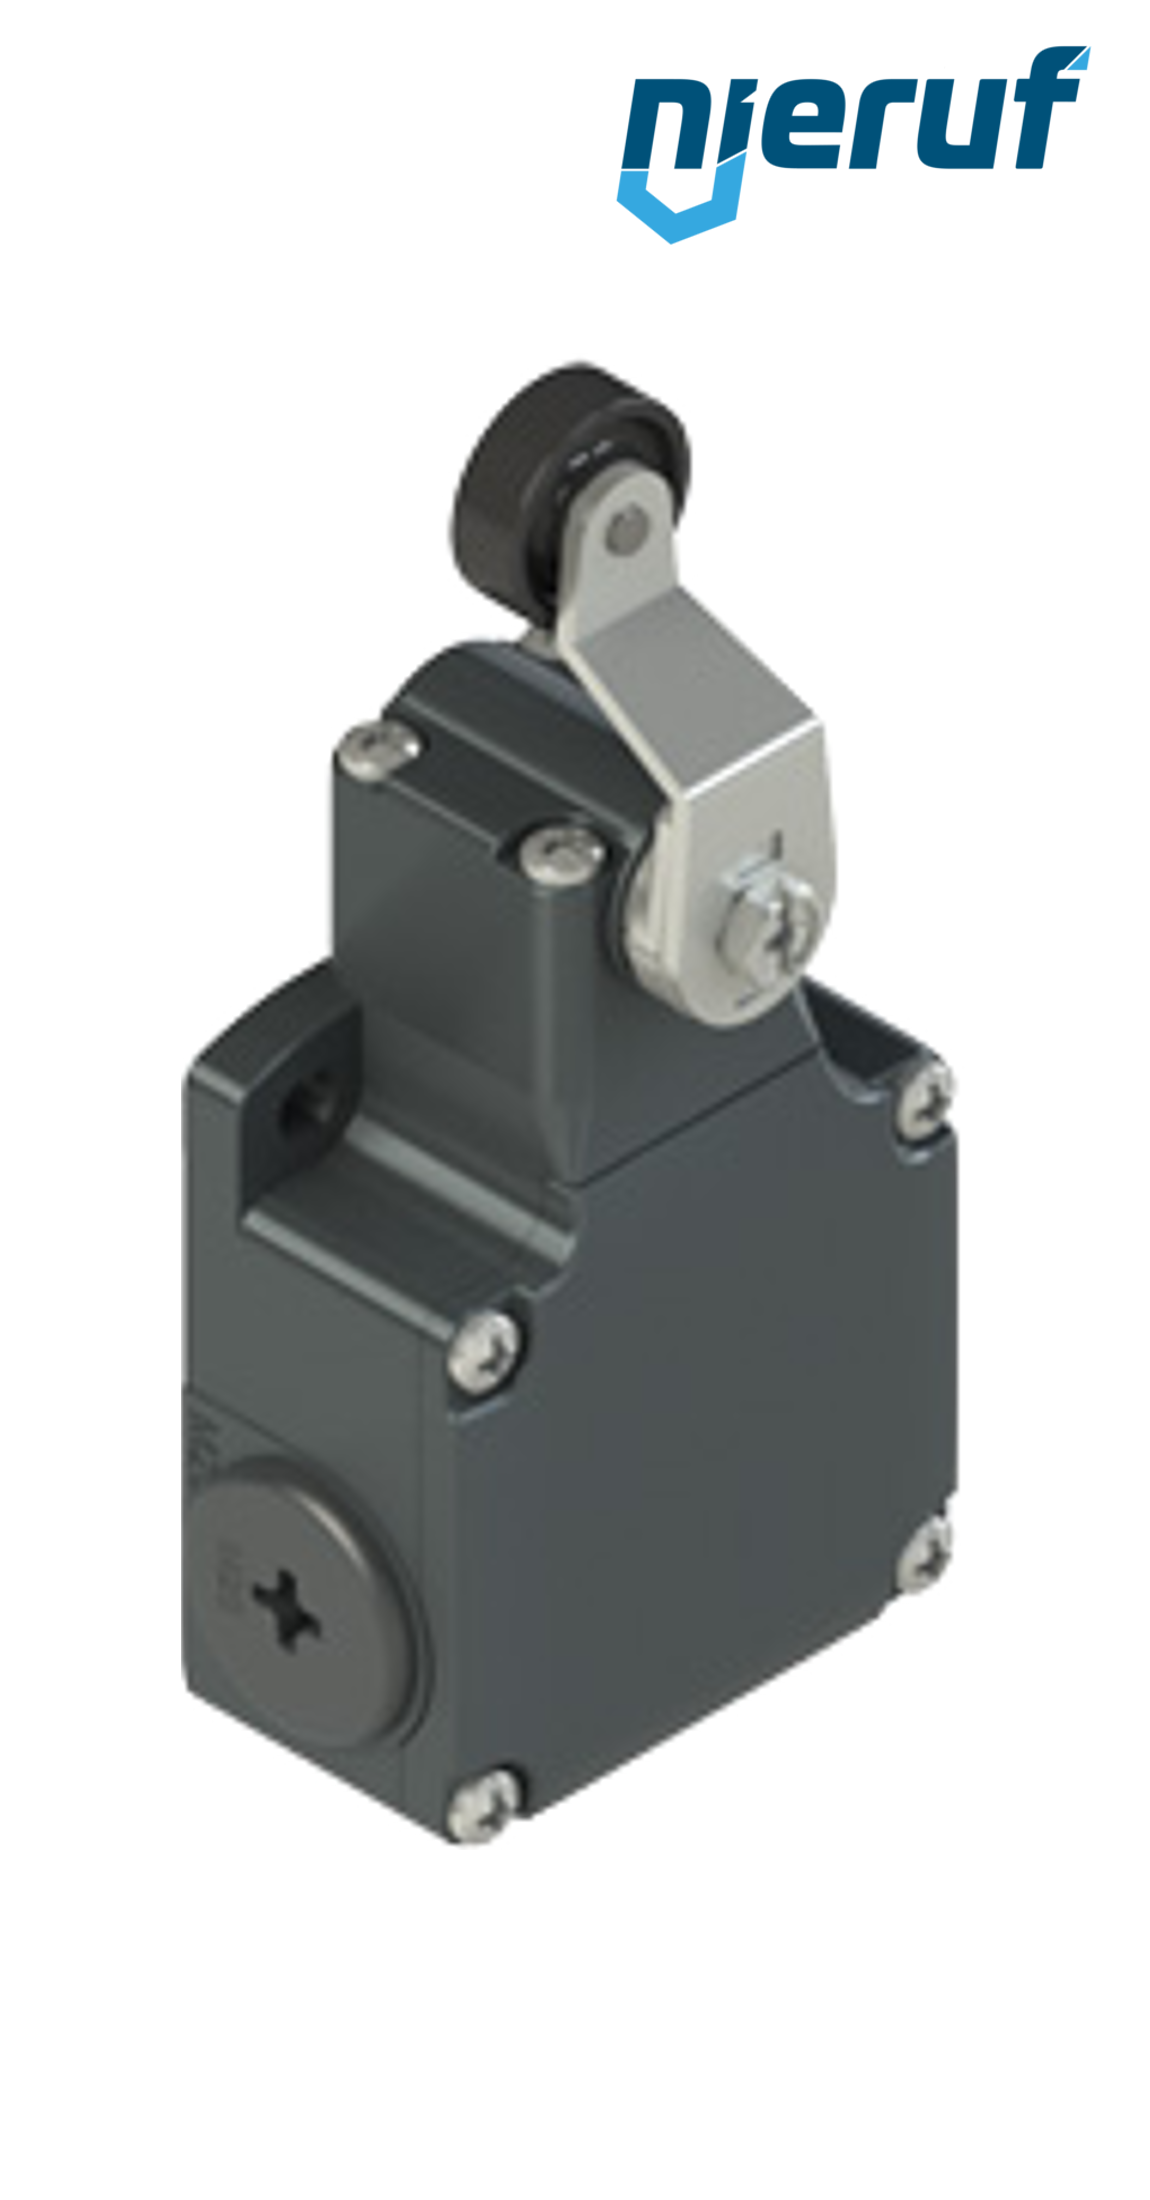 interrupteur de position FL551 PR04 pour vannes à guillotine pneumatiques modèle SR diamètre nominal DN200 à DN300